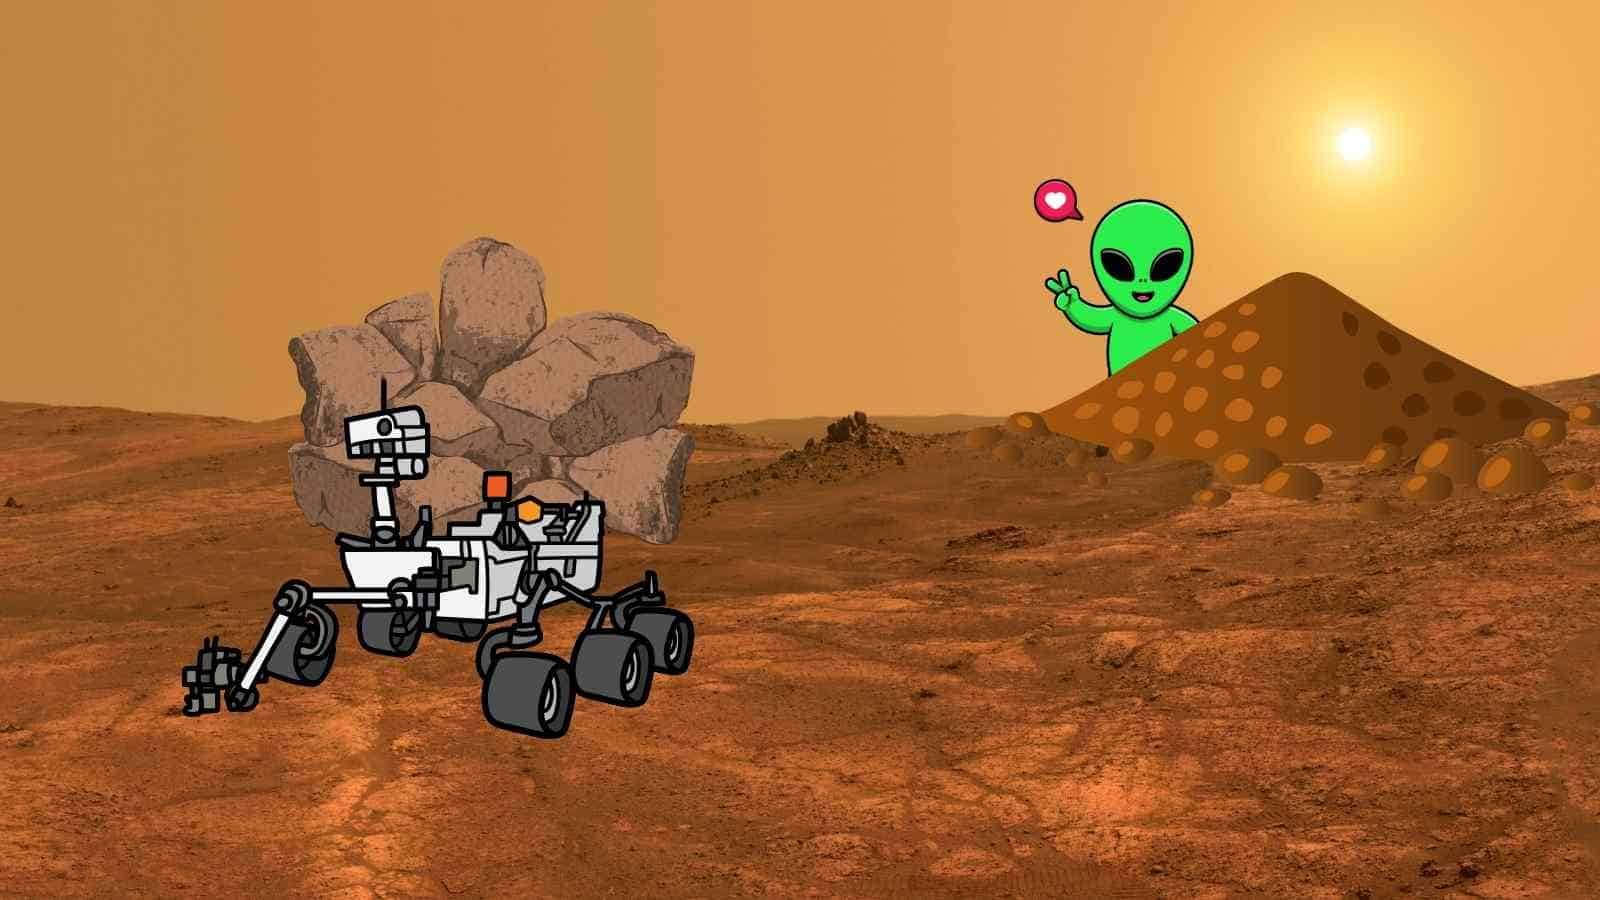 La NASA non cede di un passo, nonostante le difficoltà, nella sua missione Mars Sample Return 